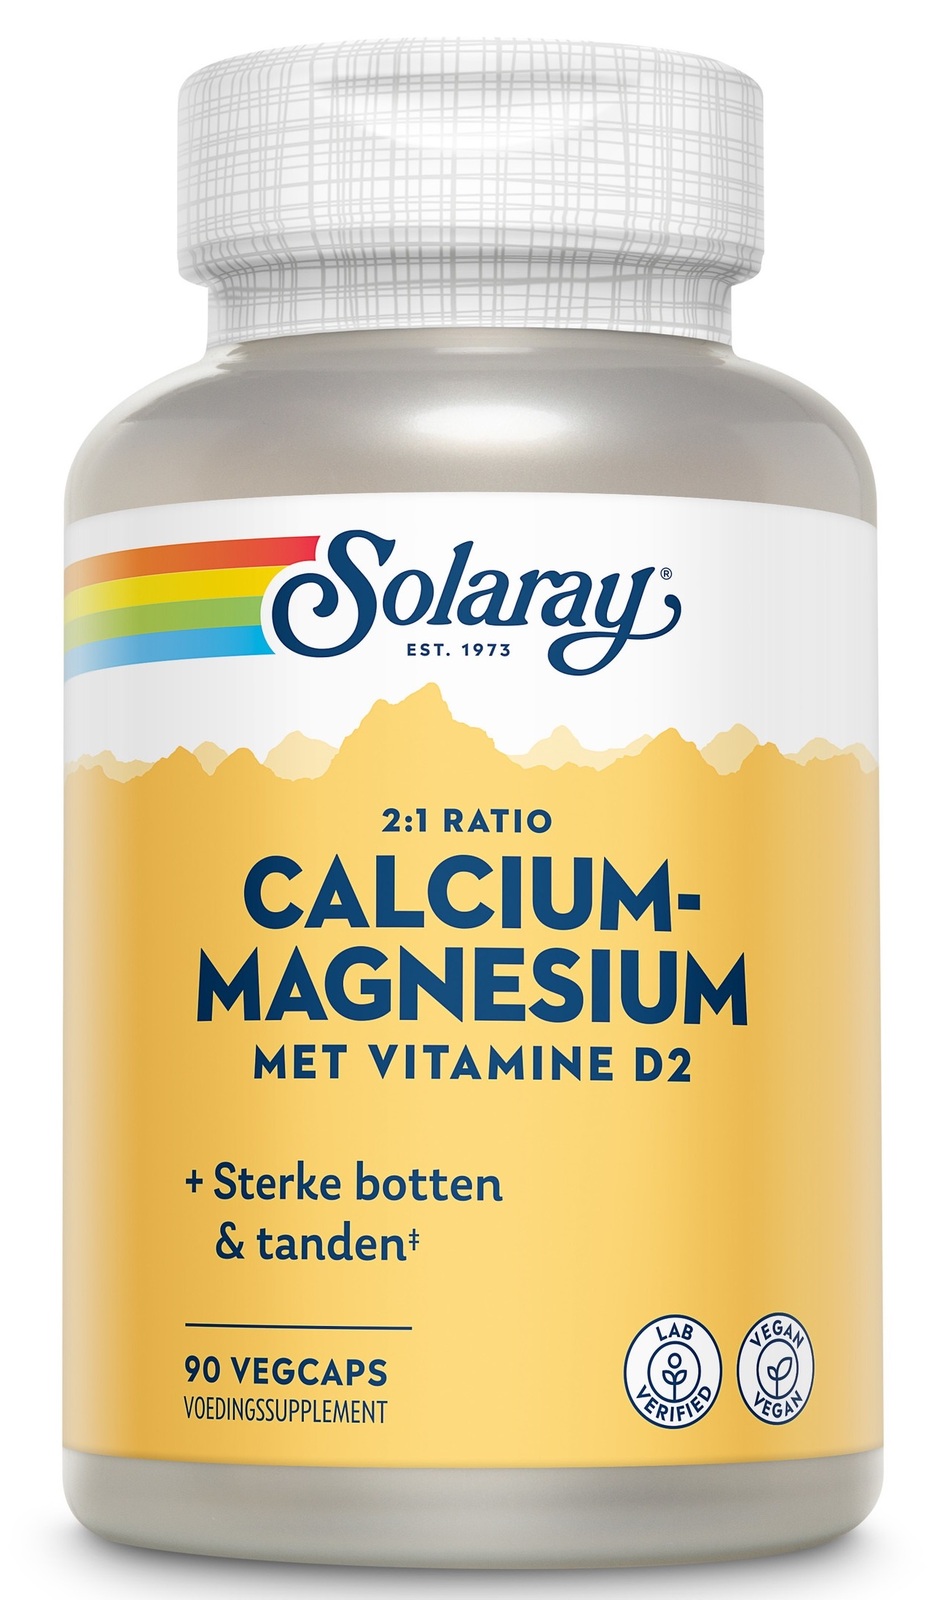 Solaray Calcium-Magnesium met Vitamine D2 Capsules kopen